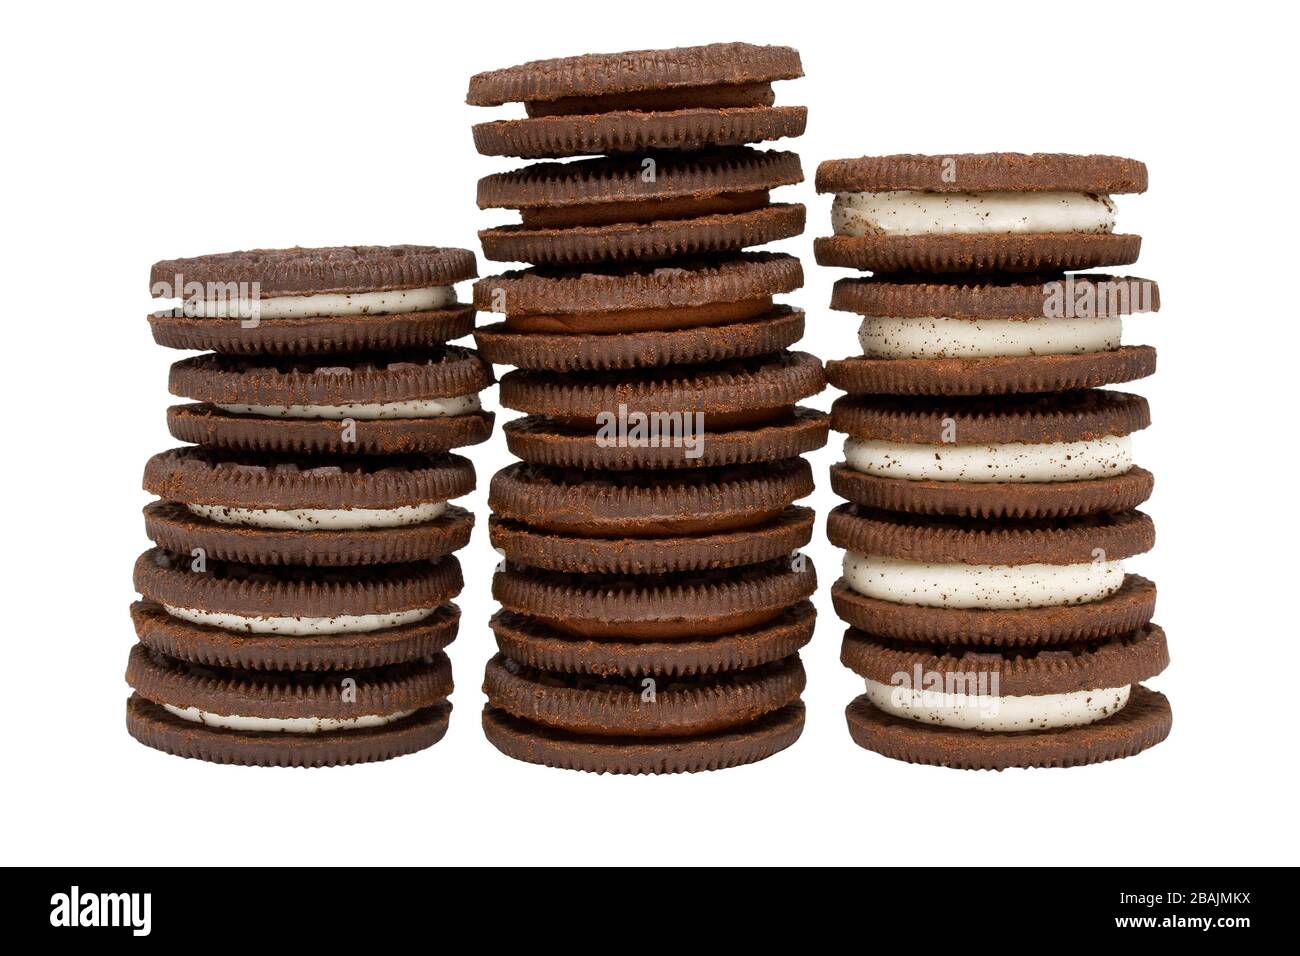 Trois piles de biscuits au chocolat avec du chocolat et de la crème à la vanille sur fond blanc isolé Banque D'Images